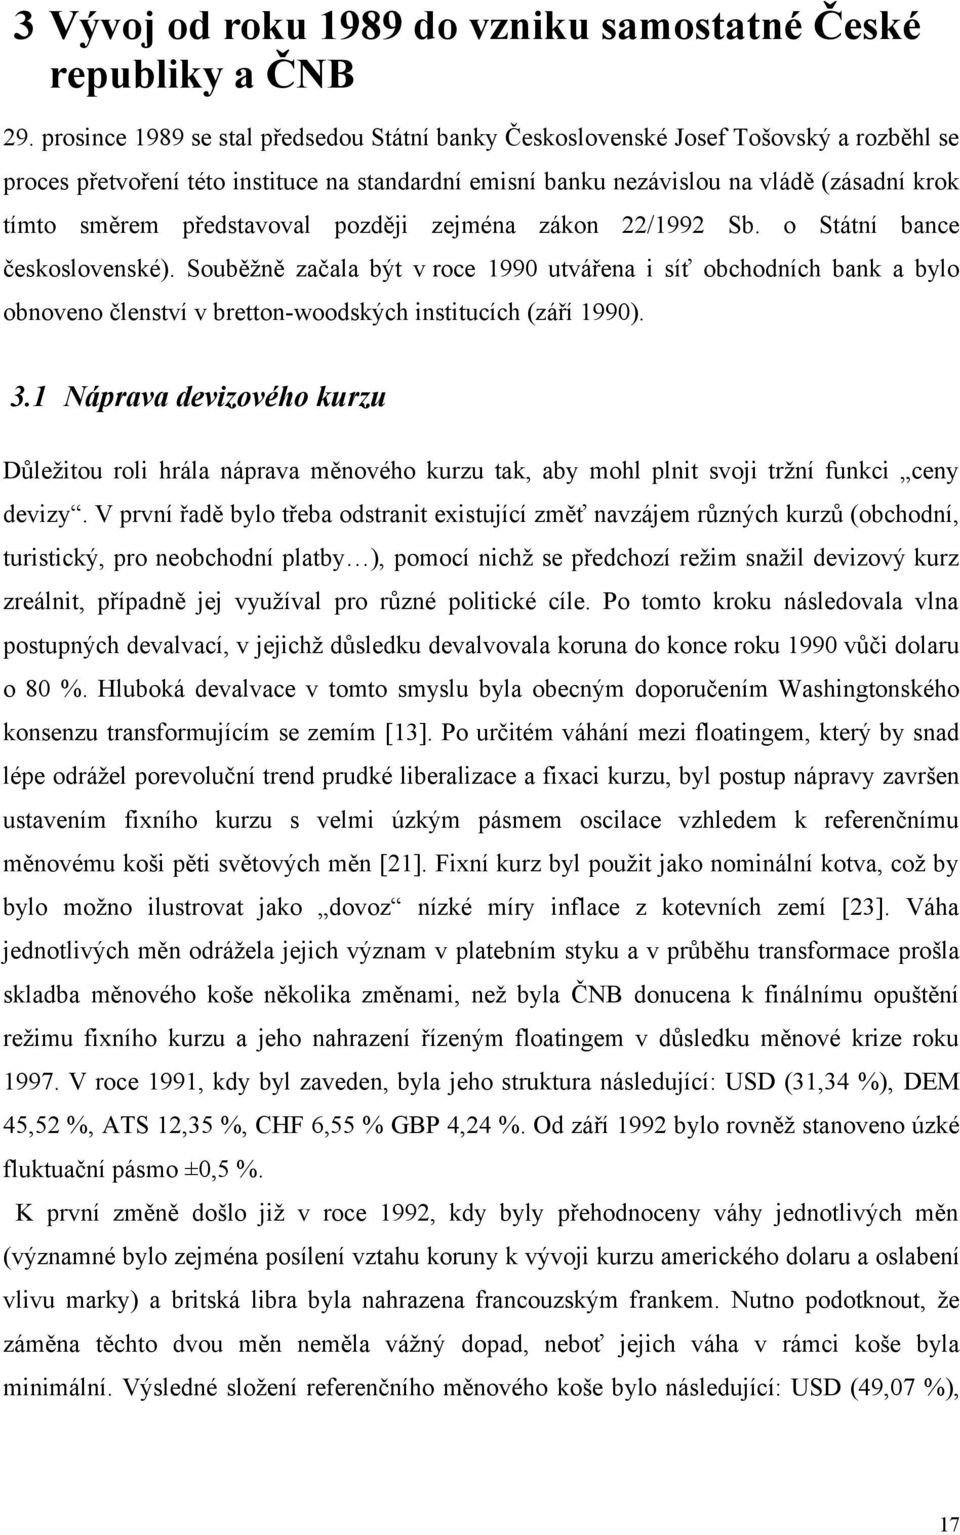 představoval později zejména zákon 22/1992 Sb. o Státní bance československé).